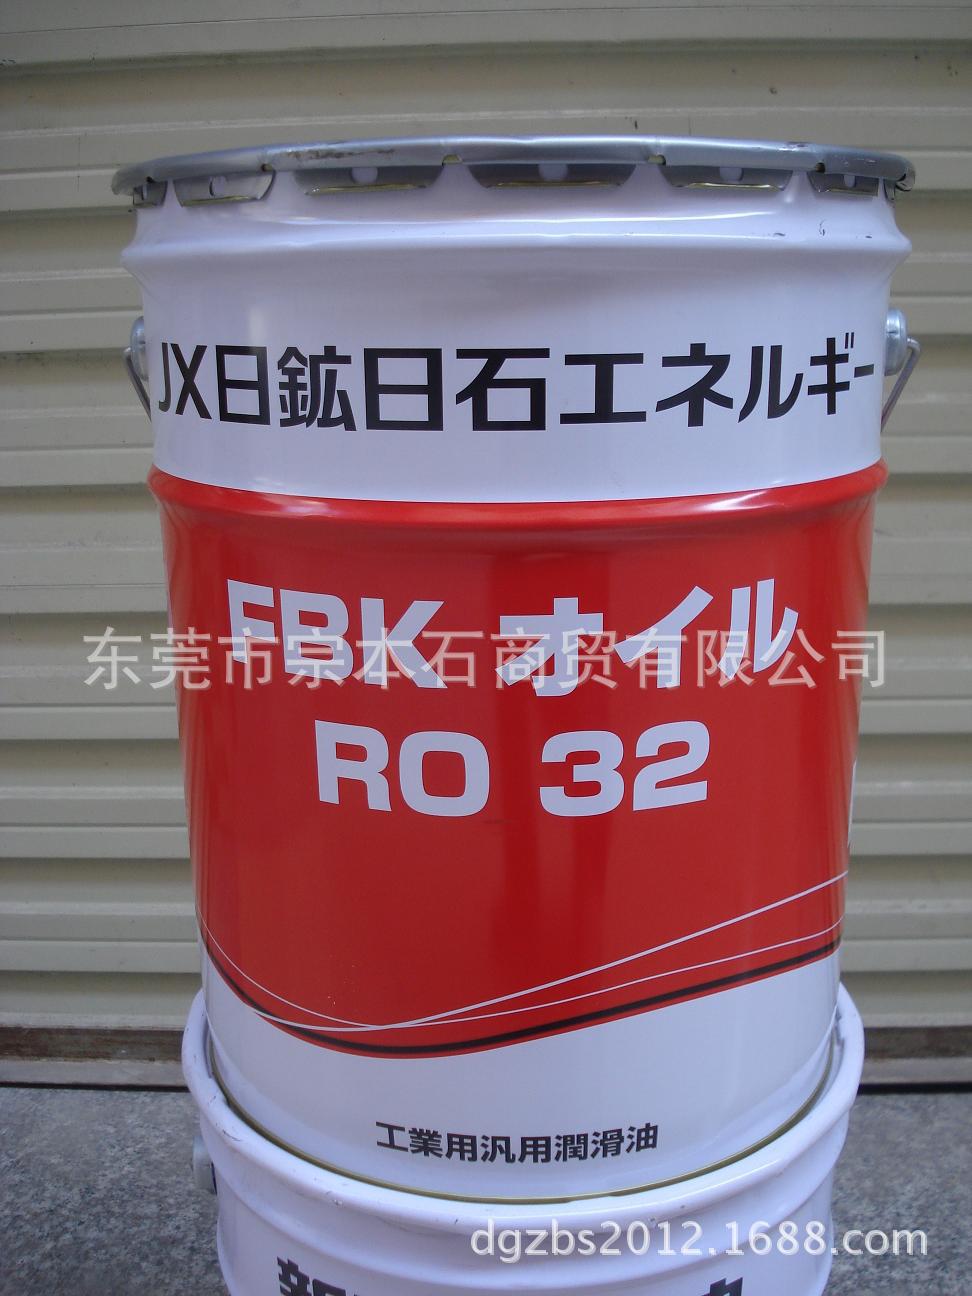 FBK OIL RO 32正麵